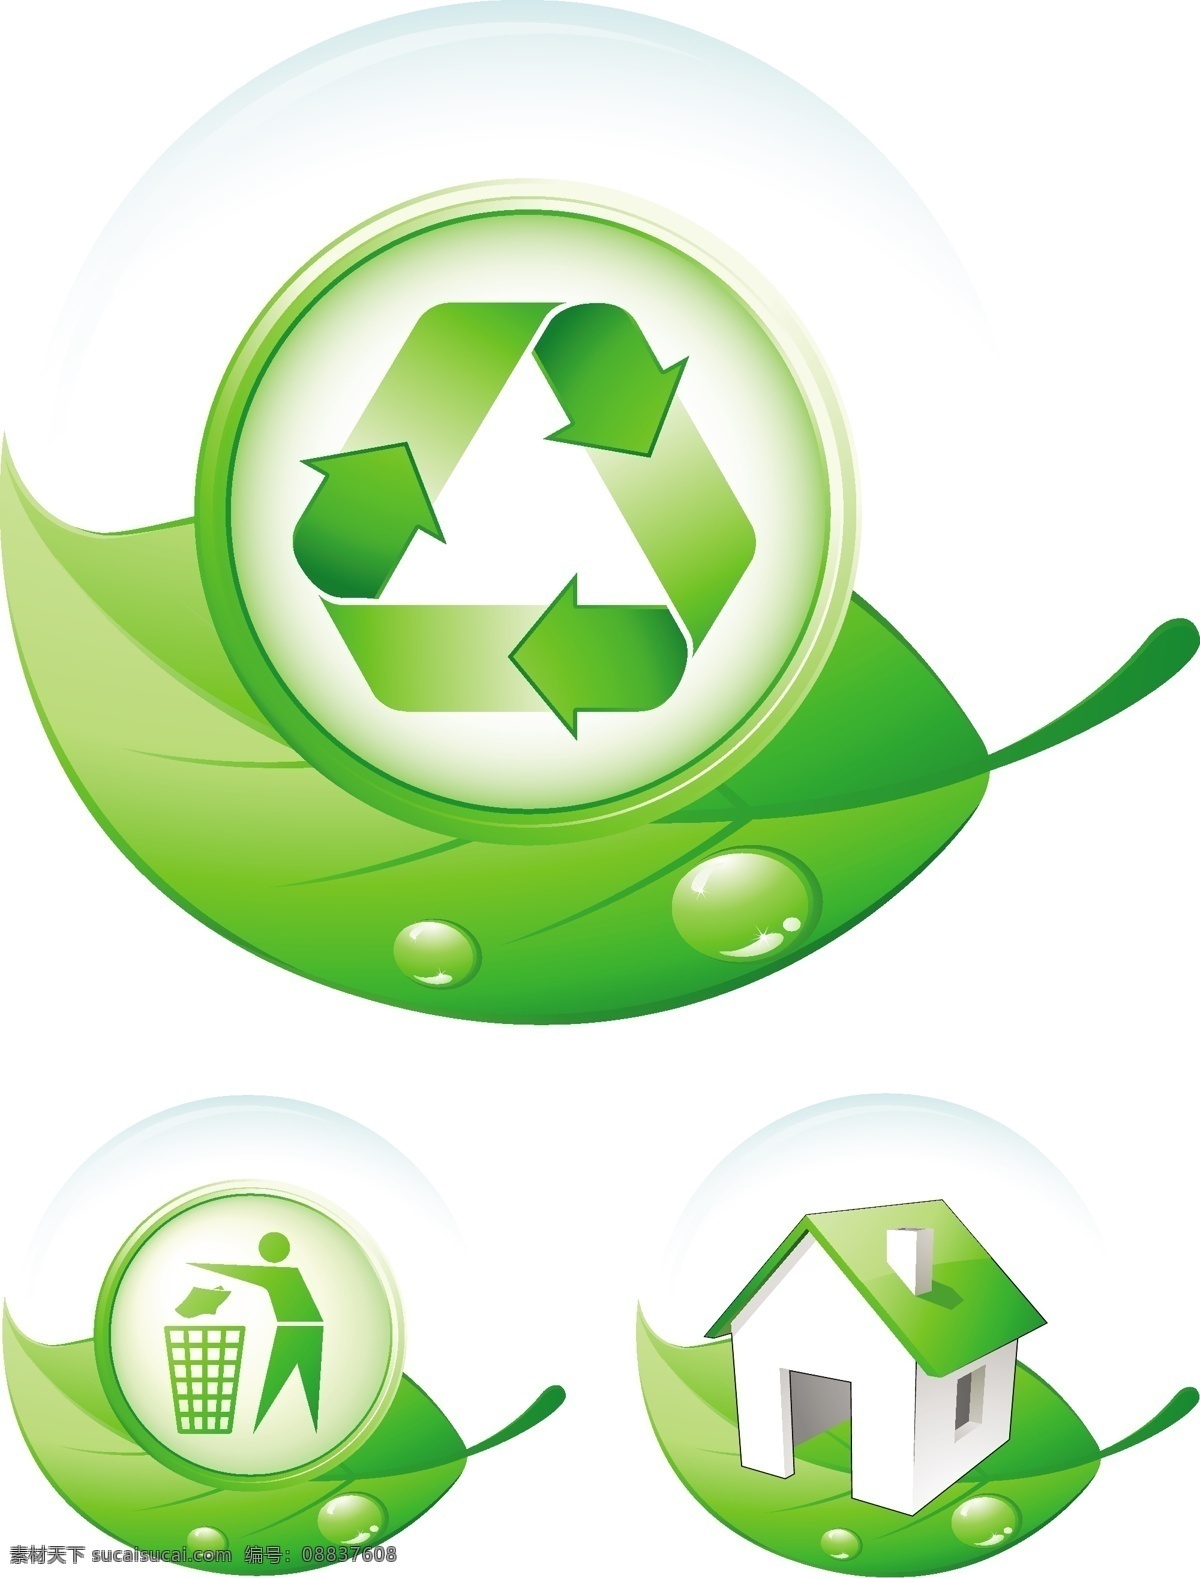 环保 标志 环保标志 垃圾箱 绿色 绿叶子 小房子 循环标志 循环利用 请勿乱扔 矢量图 其他矢量图